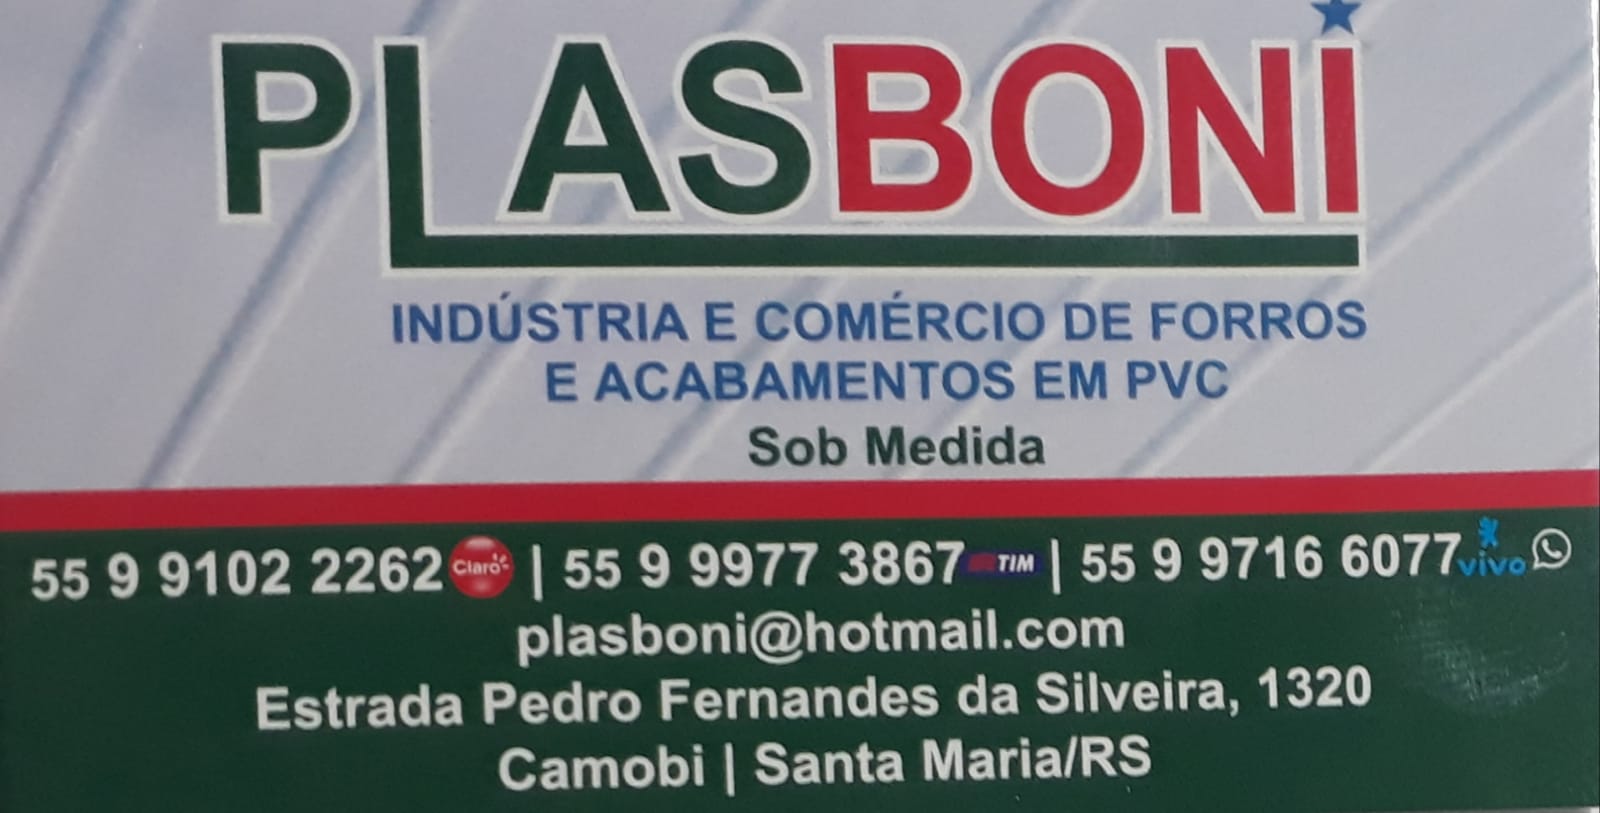 'PLASBONI Industria e Comércio de Forros e Acabamentos em PVC'